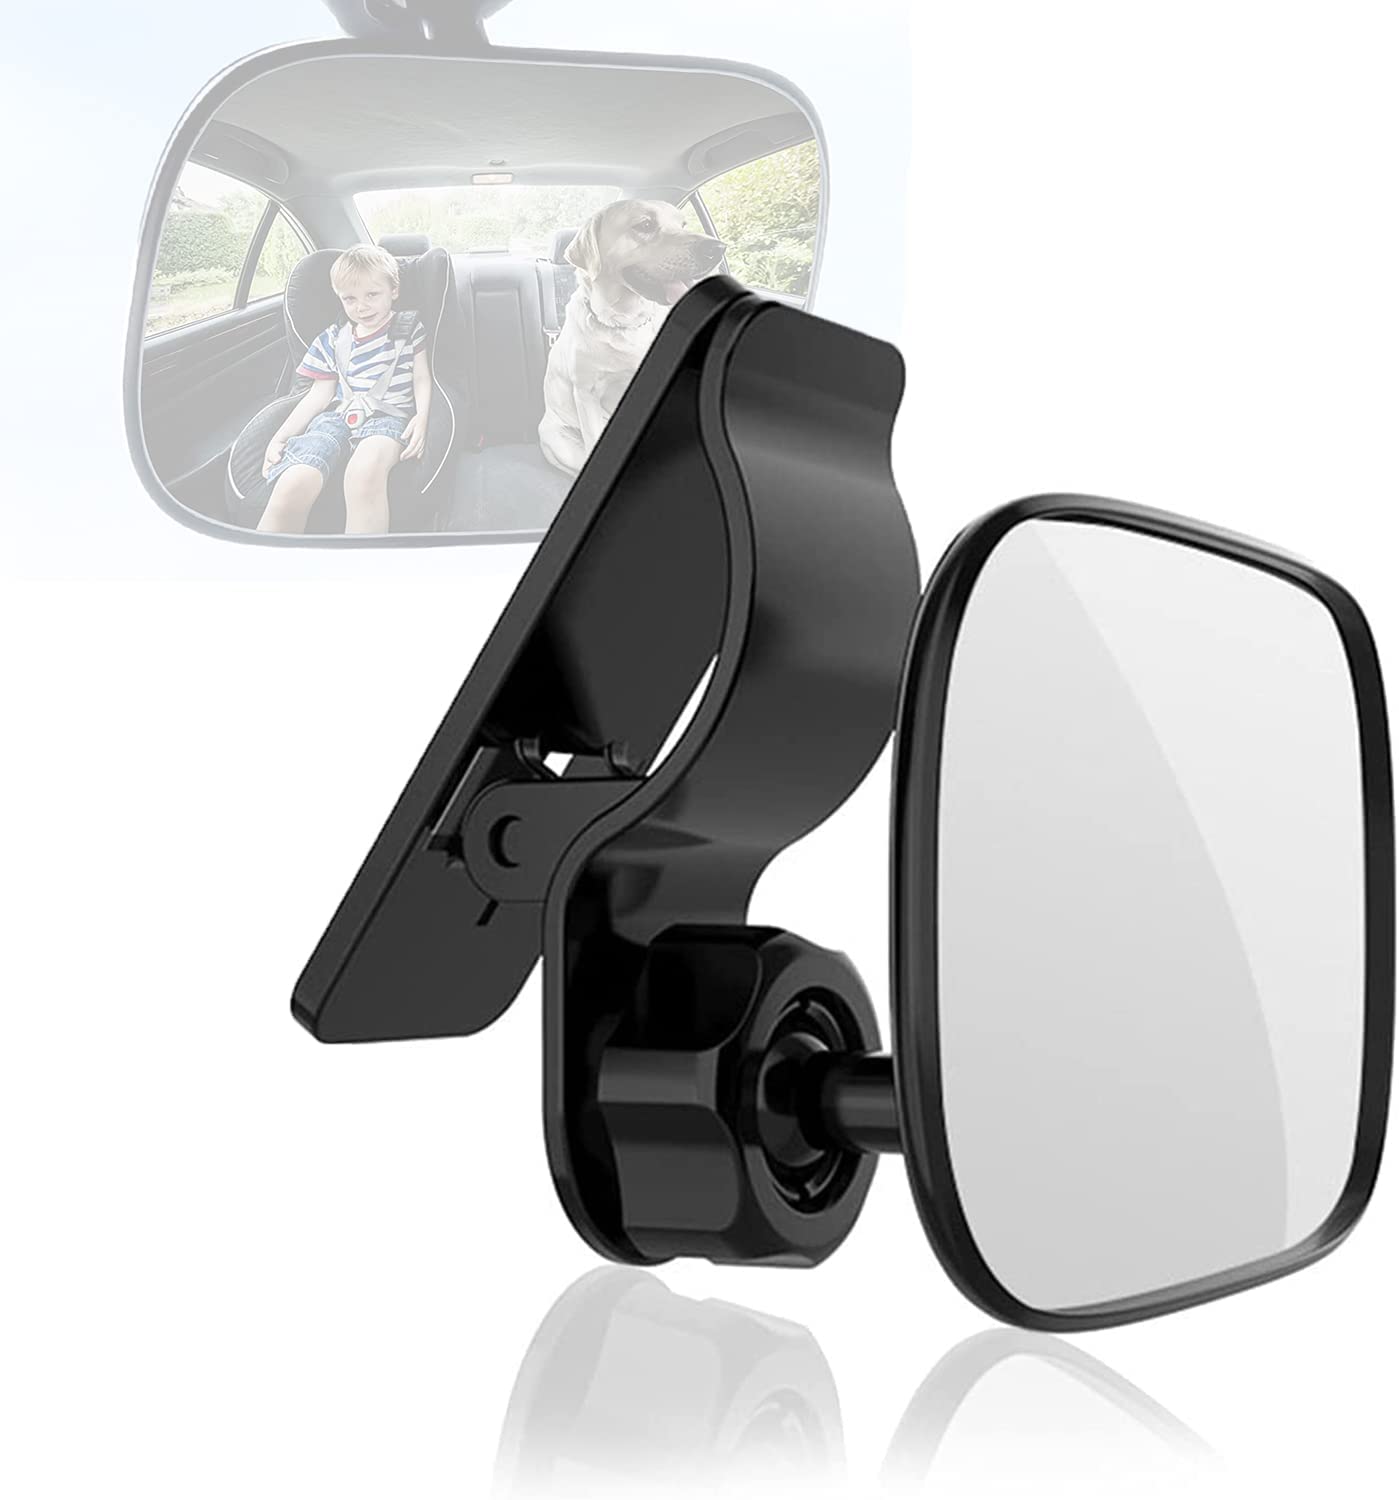 Rückspiegel Baby Shatterproof Car Rückspiegel kompatibel mit meisten Auto 360° schwenkbar für Baby Kinderbeobachtung Rücksitzspiegel Spiegel-Auto-Baby 